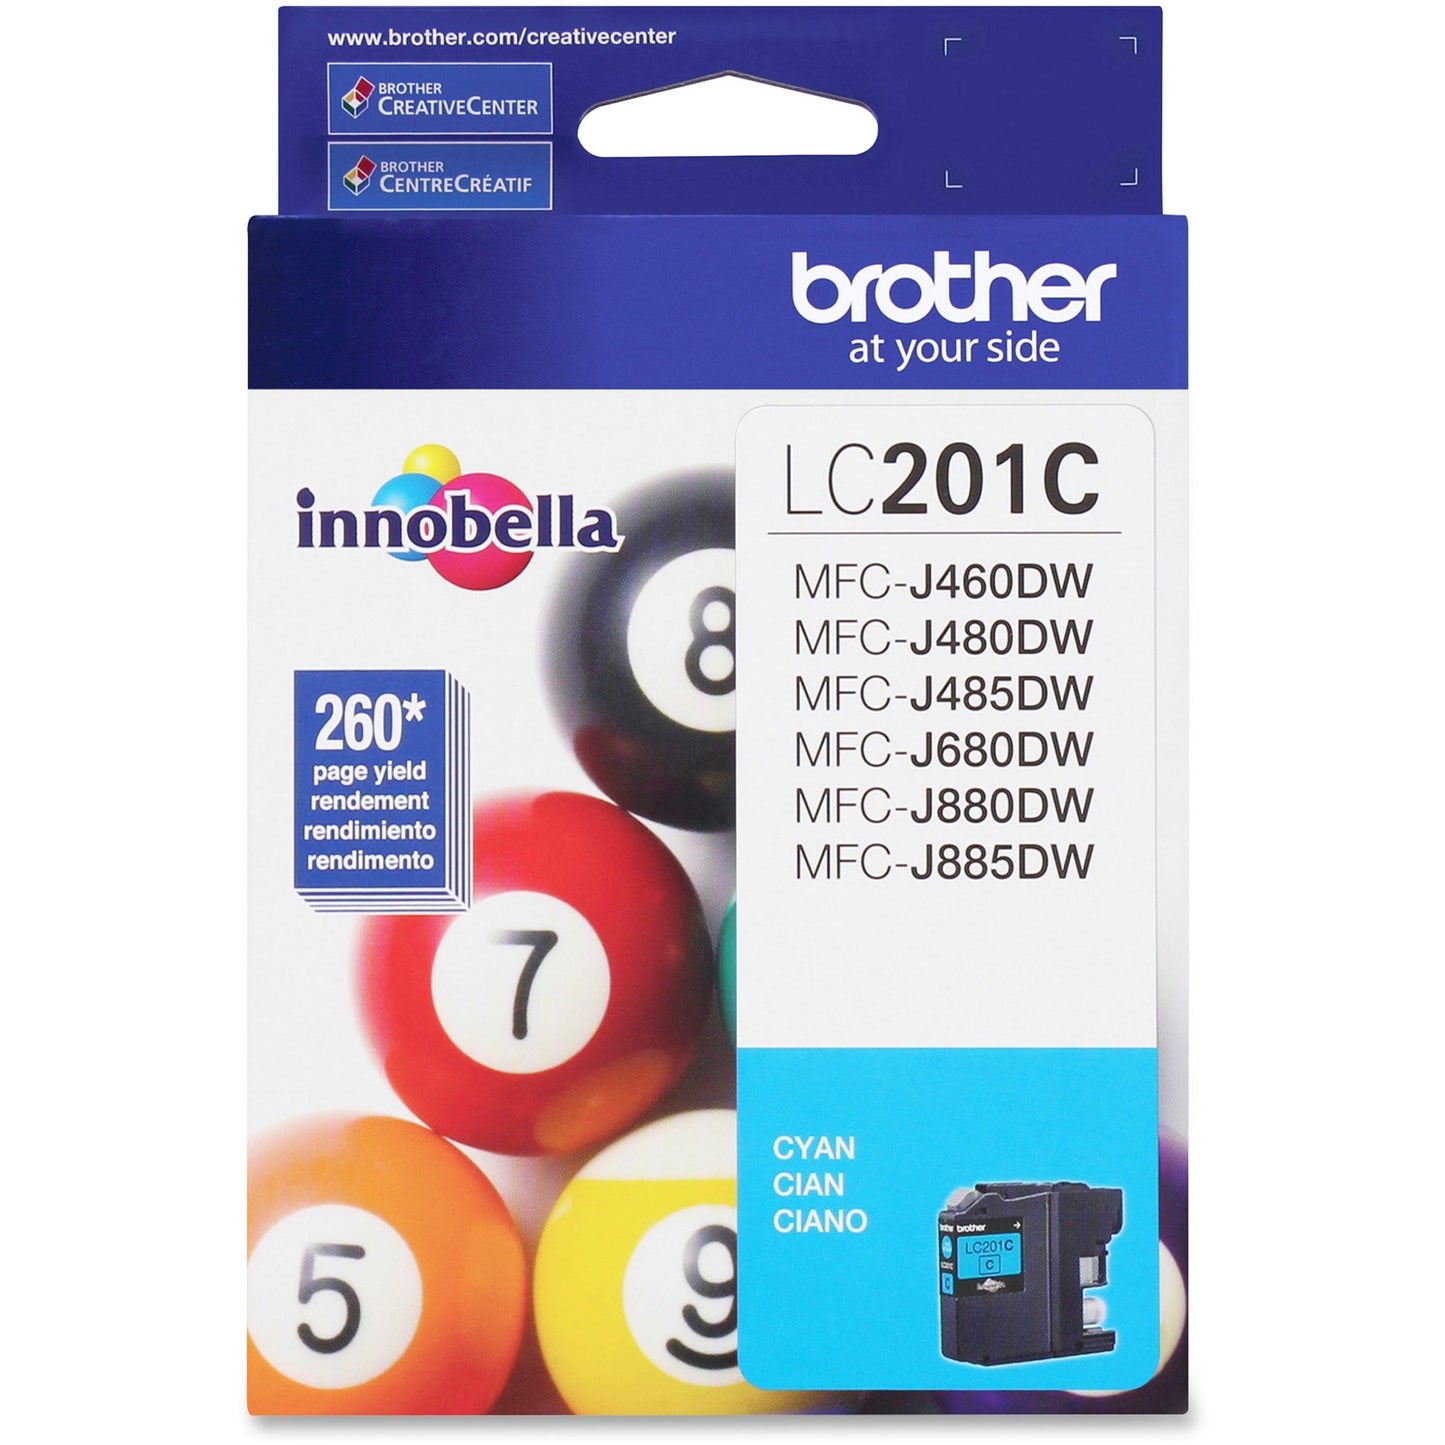 Brother Innobella LC201 Original Ink Cartridge - Cyan